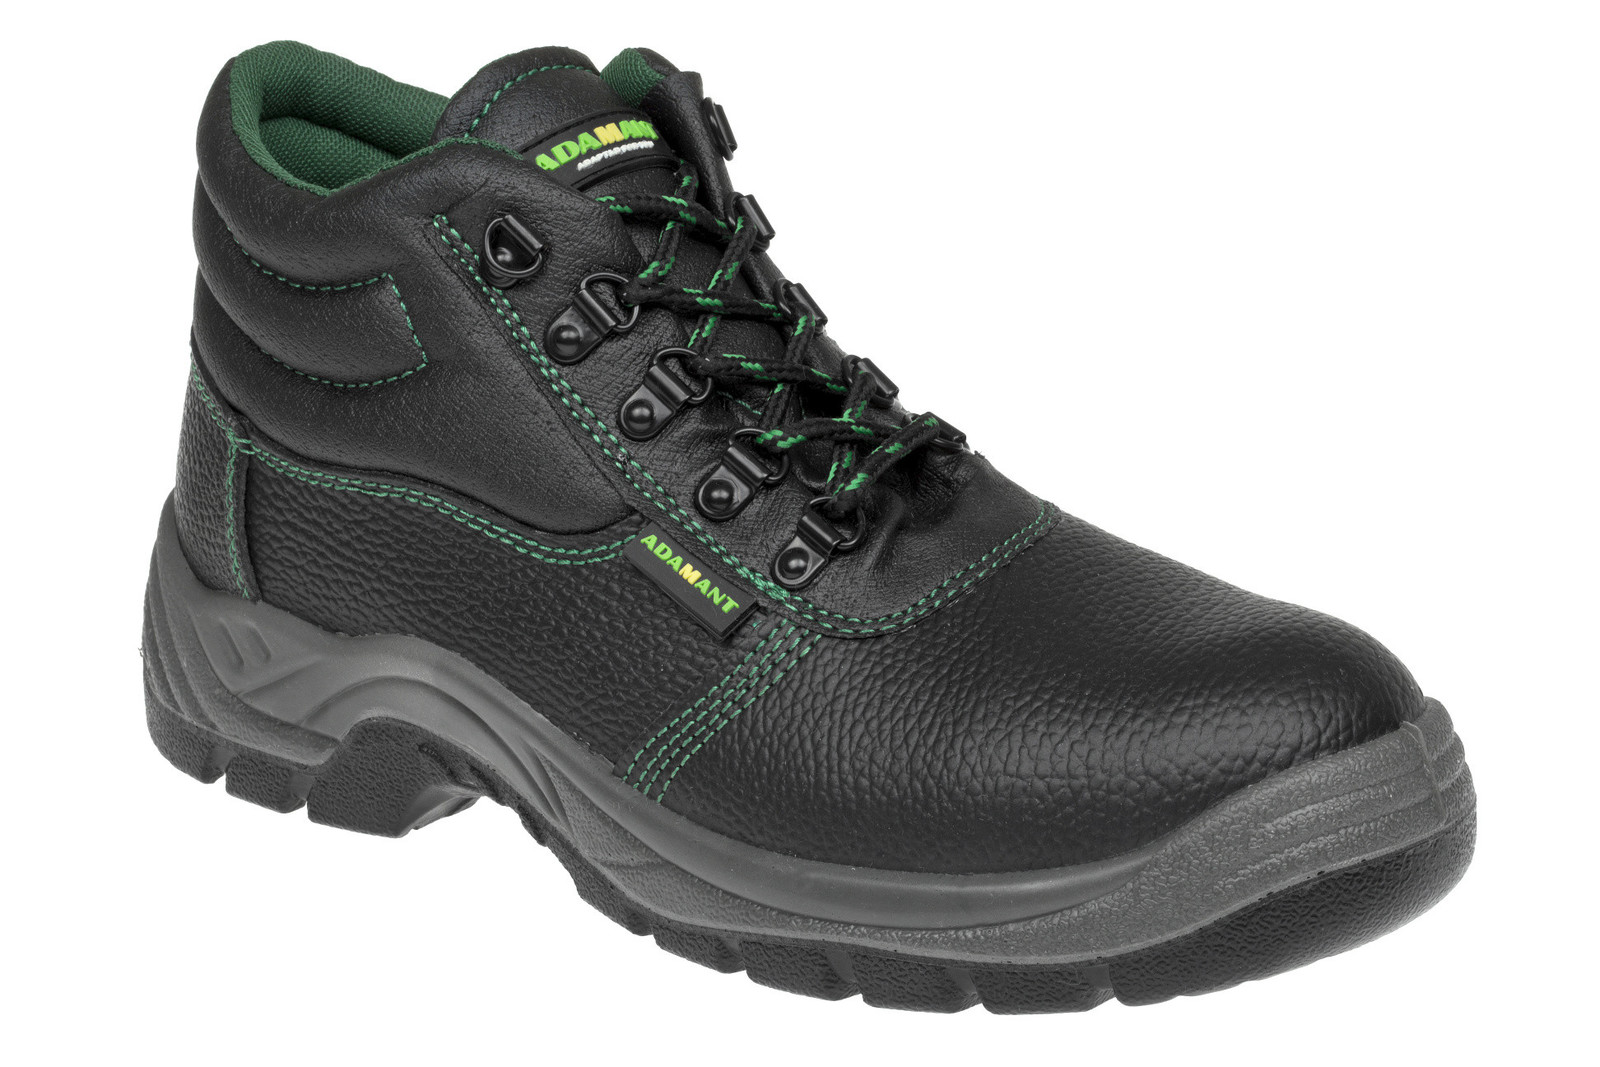 Bezpečnostná obuv Adamant Classic S1P - veľkosť: 42, farba: čierna